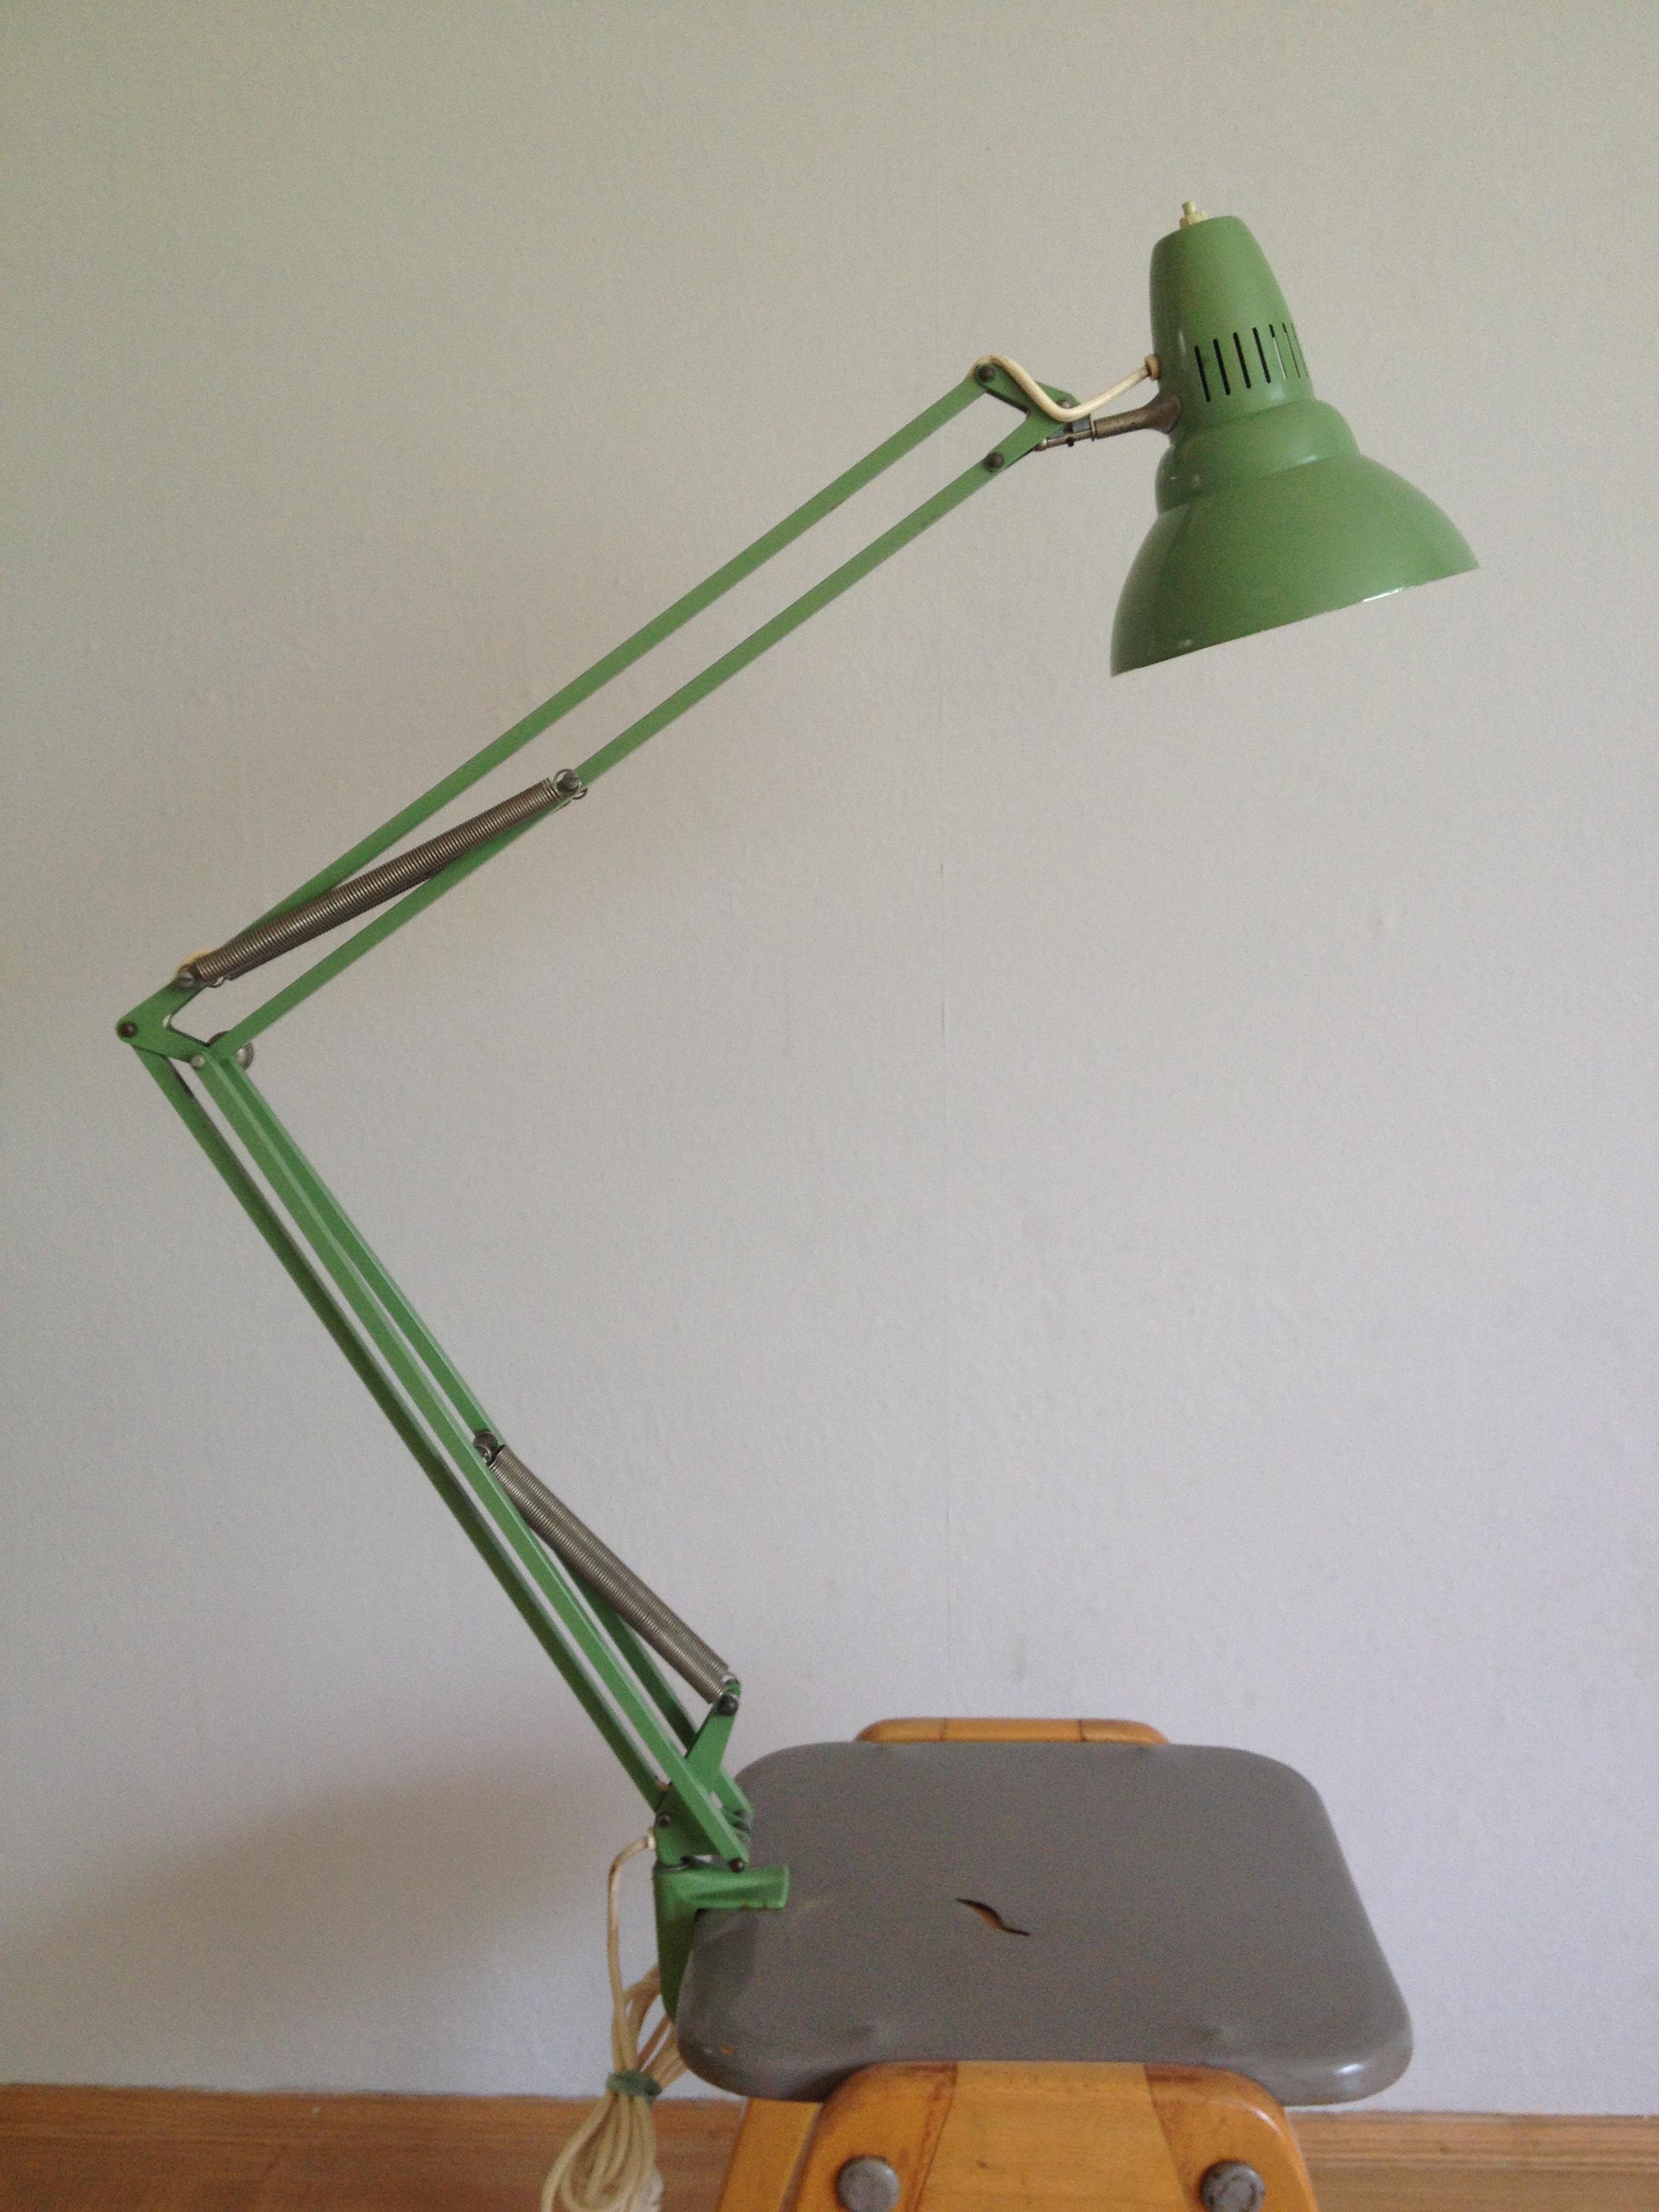 L1, ein Entwurf von Jac Jacobsen aus 1937, top Zustand, Schirm Ø 17 cm, h 19 cm, grün/innen weiß